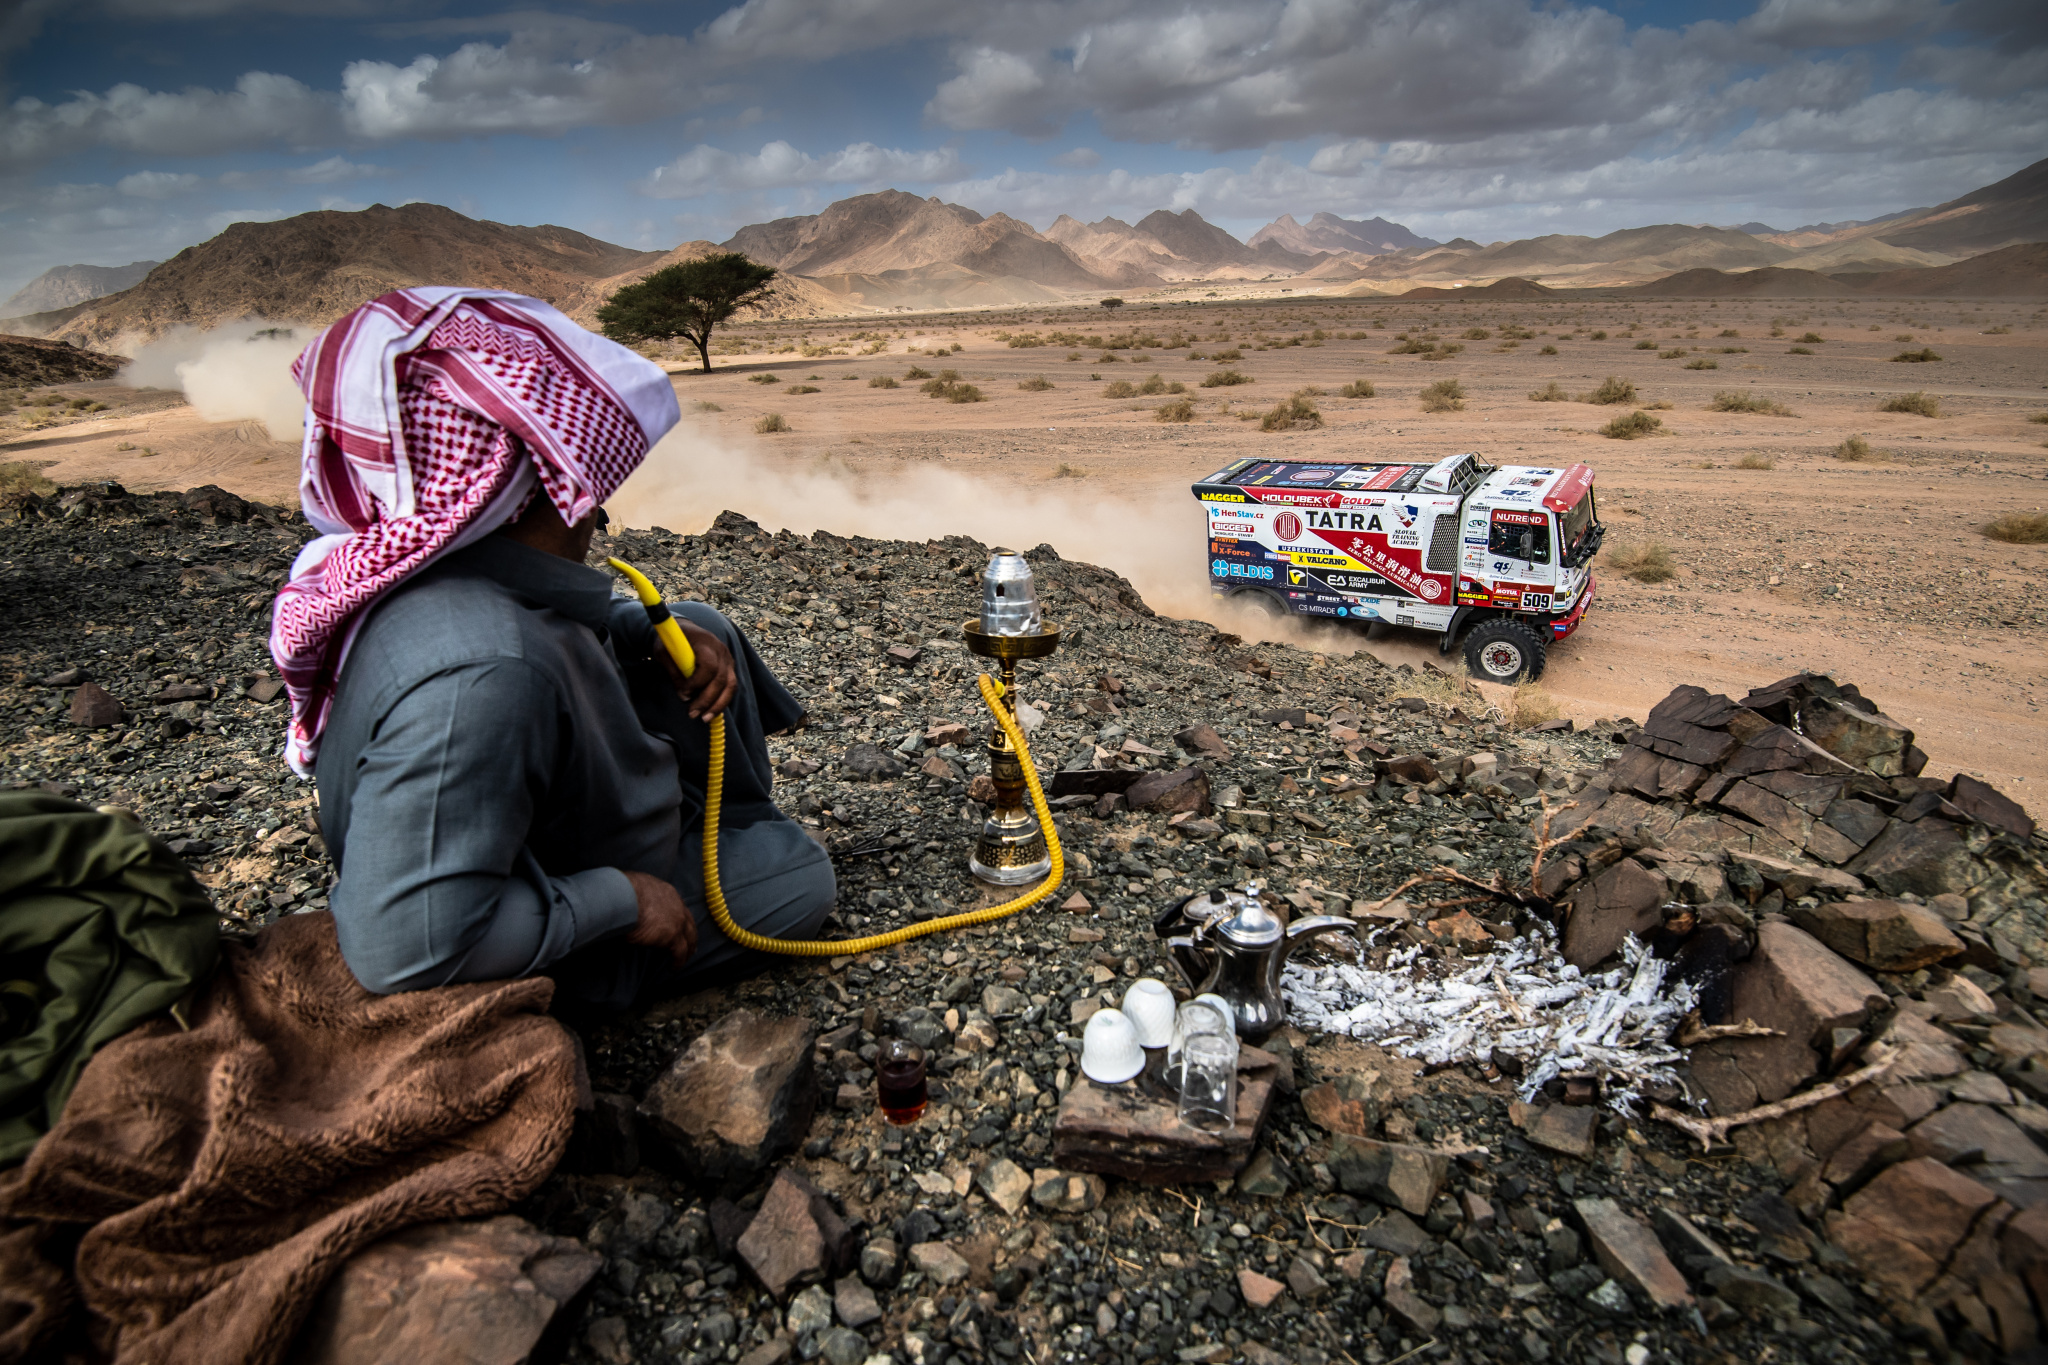 Dakar 2020 mit dem Sportfotografen Marian Chytka: Das nächste Mal möchte ich meinen eigenen Hubschrauber